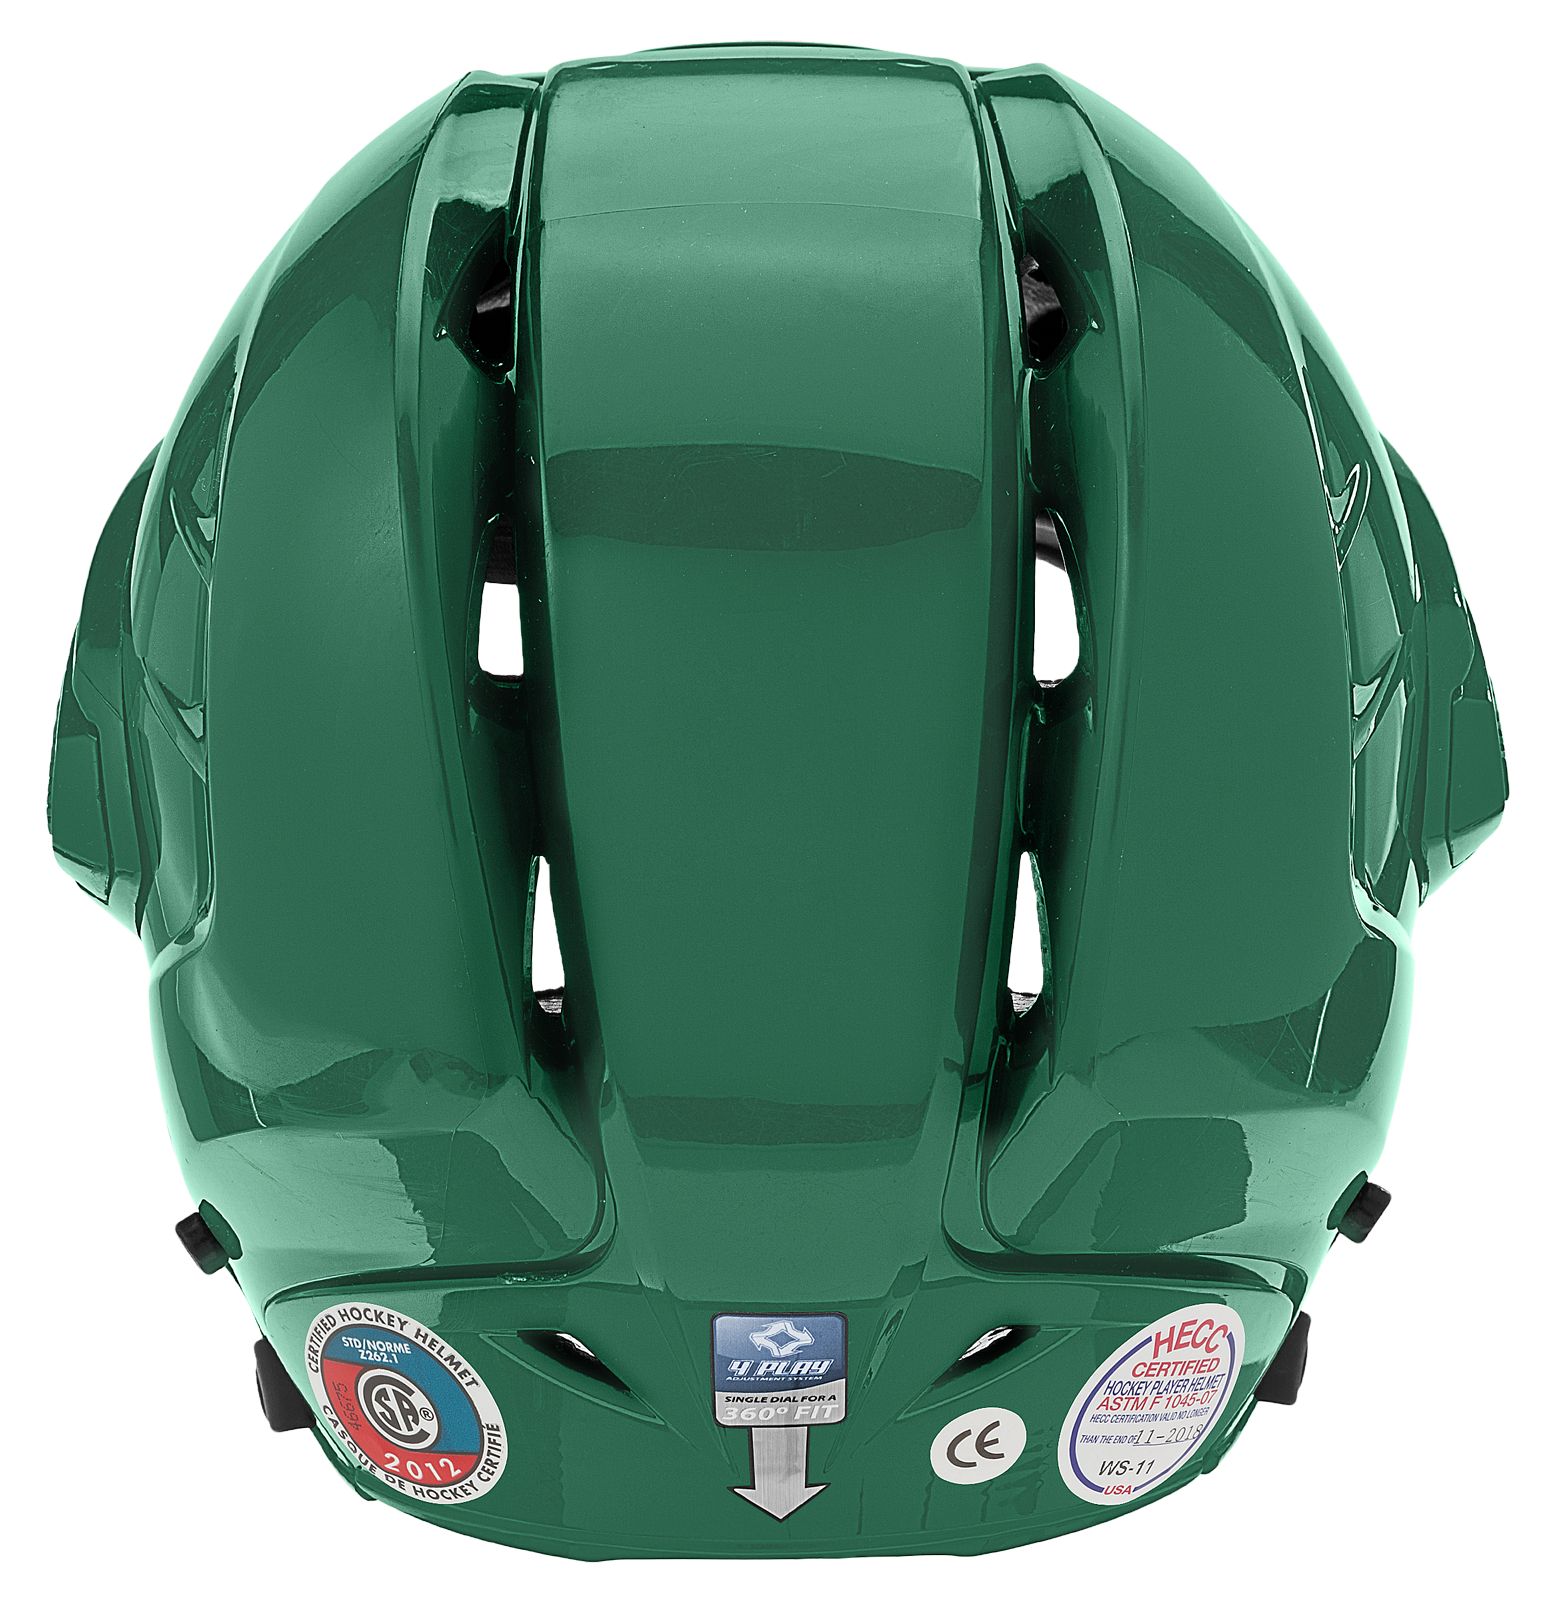 Krown 360 Helmet, Forest Green image number 3